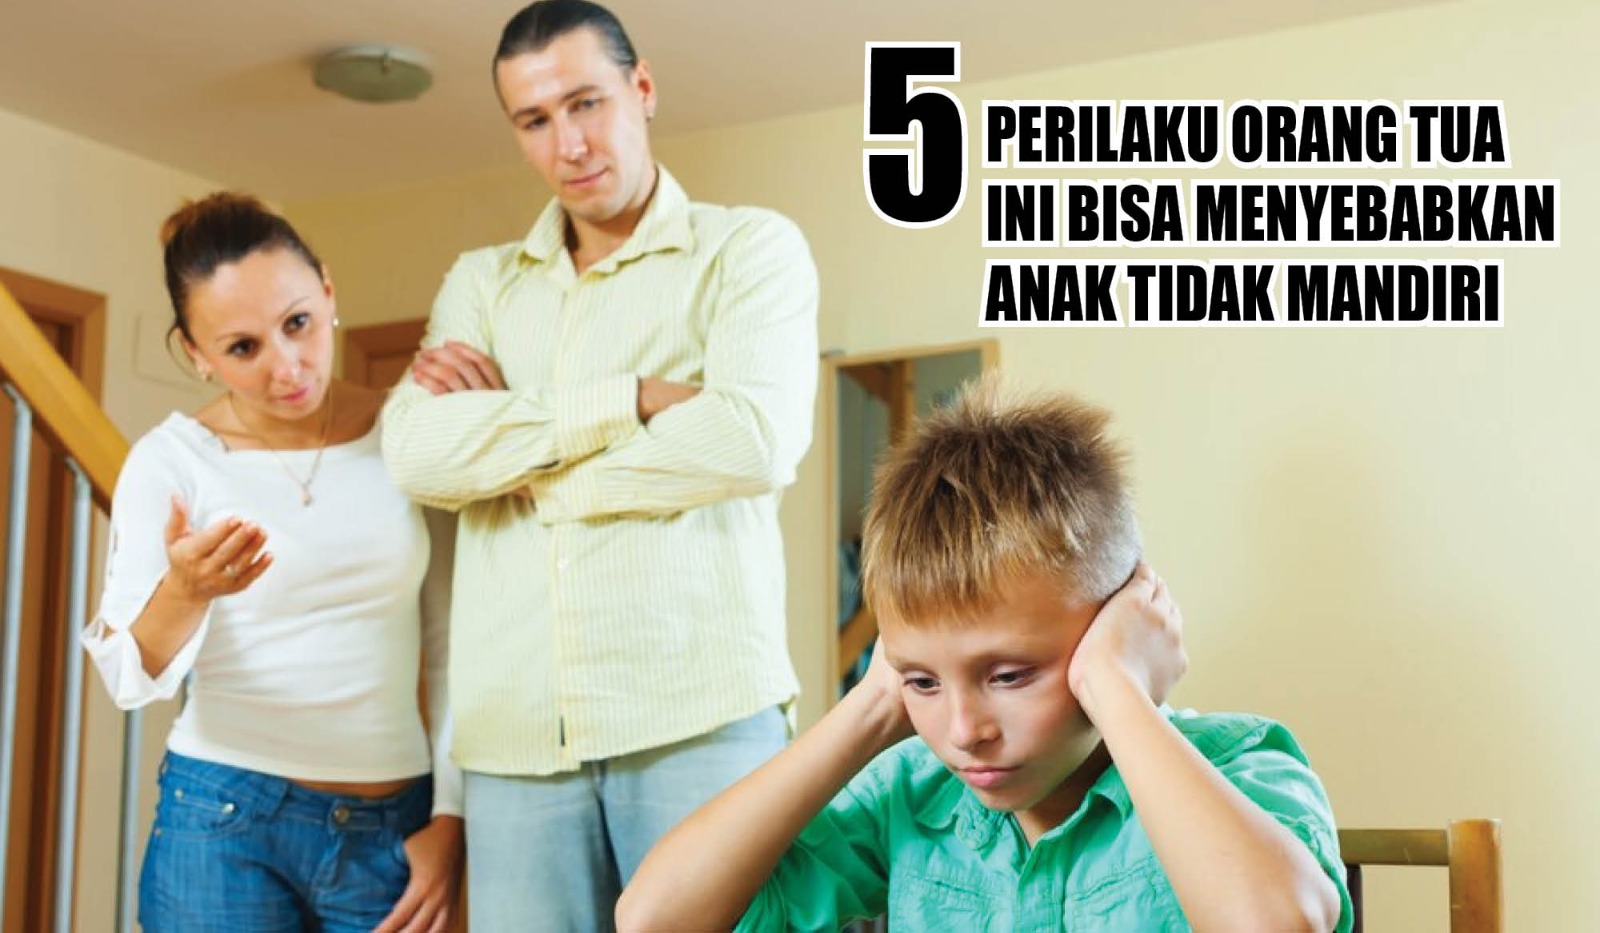 Jangan Lakukan! 5 Perilaku Orang Tua Ini Bisa Menyebabkan Anak Tidak Mandiri